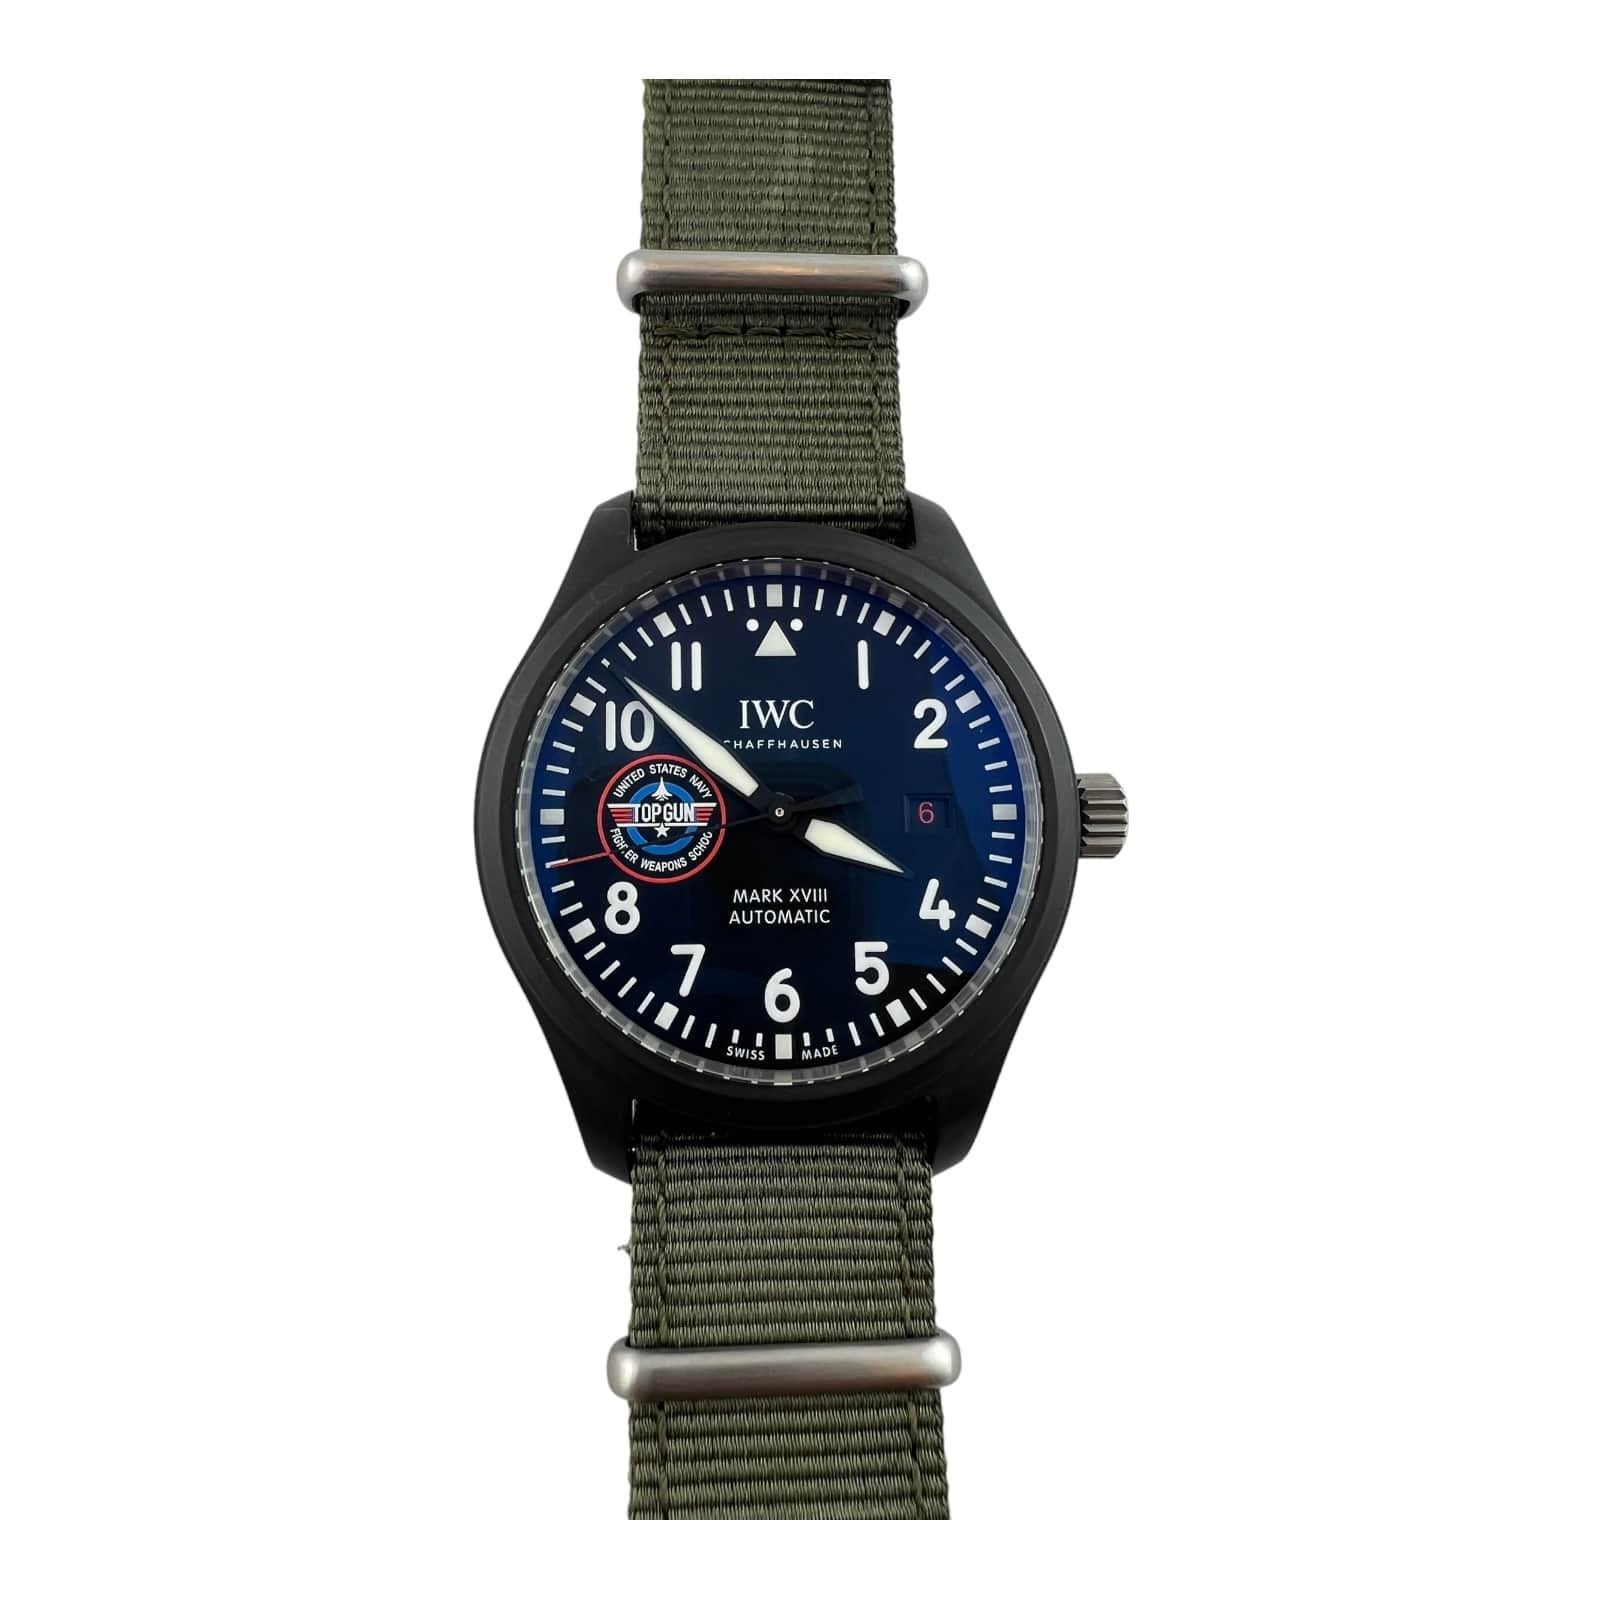 IWC Pilot's Watch Mark XVII Top Gun Watch

Modèle : IW324712
Série : 6256624

Cette montre IWC est dotée d'un boîtier en céramique de 41 mm de diamètre.

Bracelet IWC en toile verte avec boucle en acier - 11